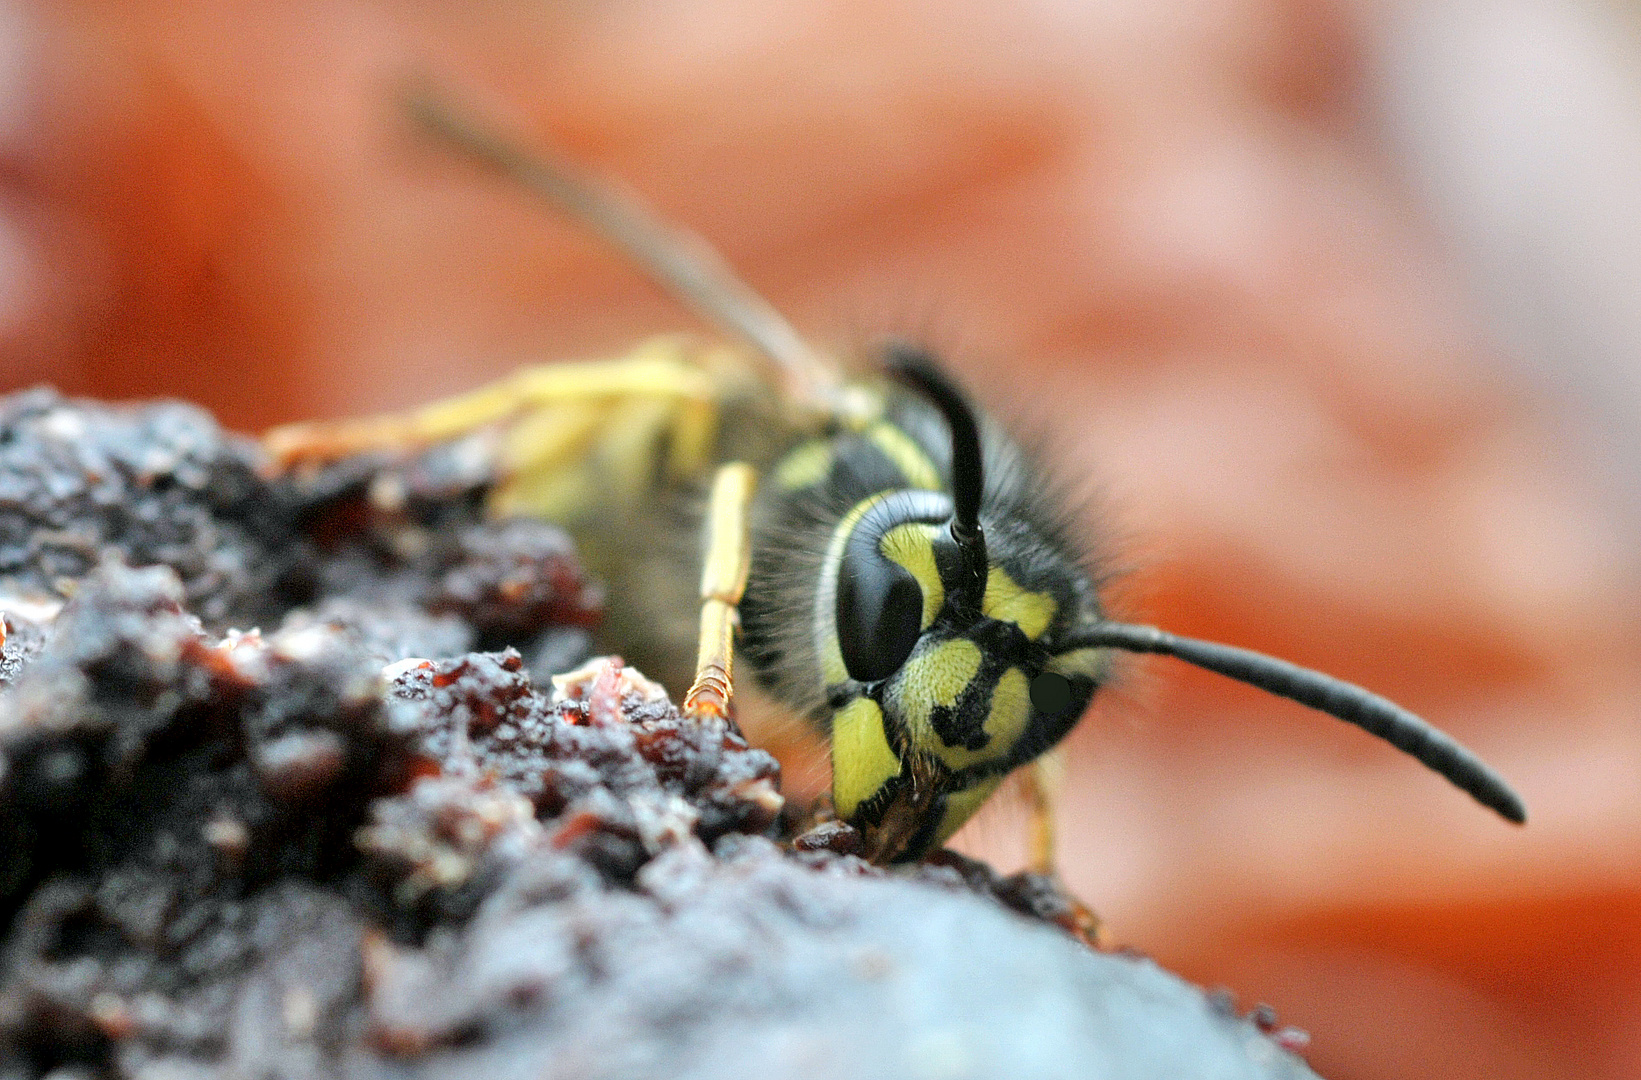 Wespe schlürft frischen Obstsaft